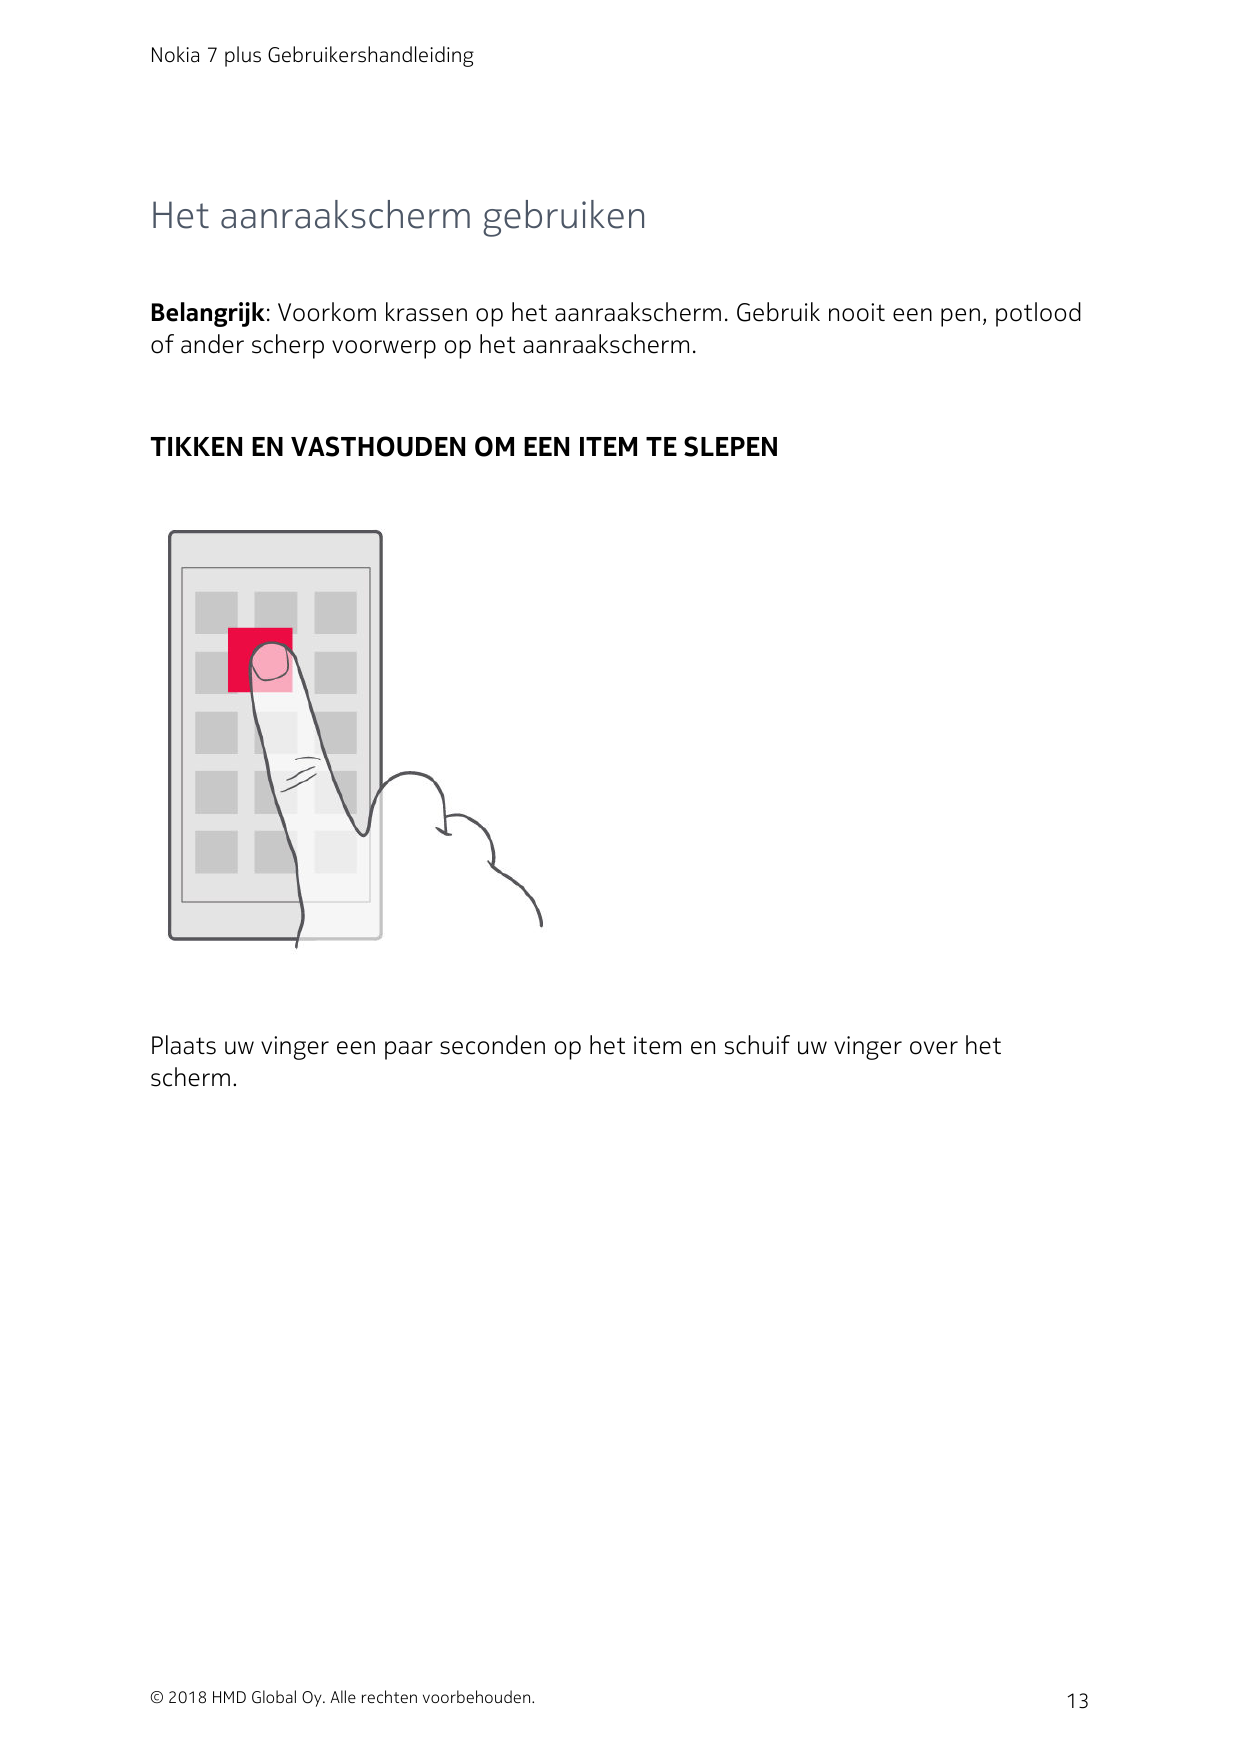 Nokia 7 plus GebruikershandleidingHet aanraakscherm gebruikenBelangrijk: Voorkom krassen op het aanraakscherm. Gebruik nooit een